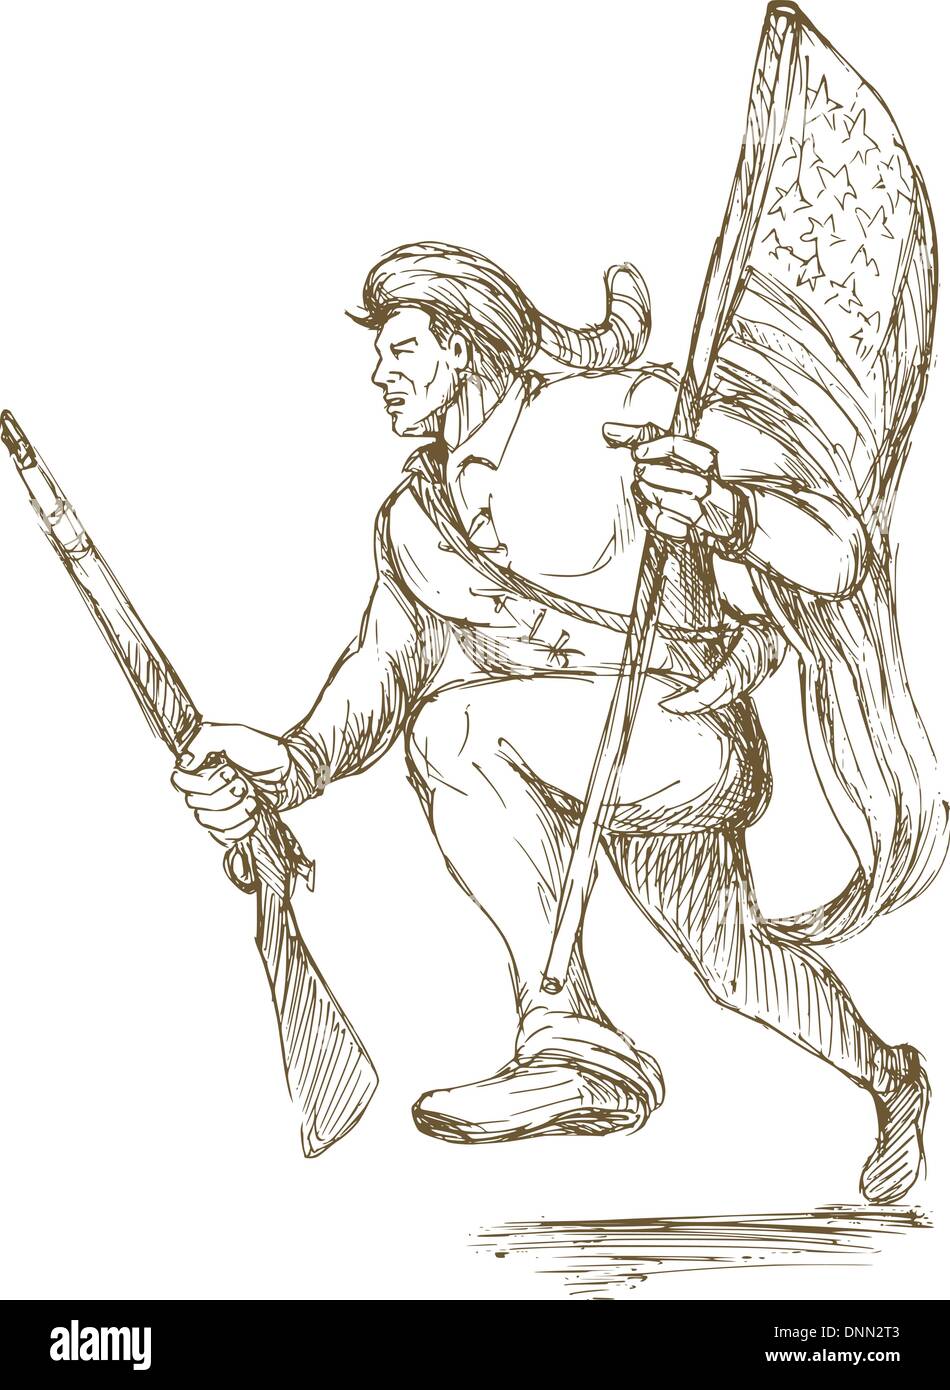 Disegnata a mano illustraion di Daniel Boone rivoluzionaria americana bandiera portante degli Stati Uniti d'America Illustrazione Vettoriale